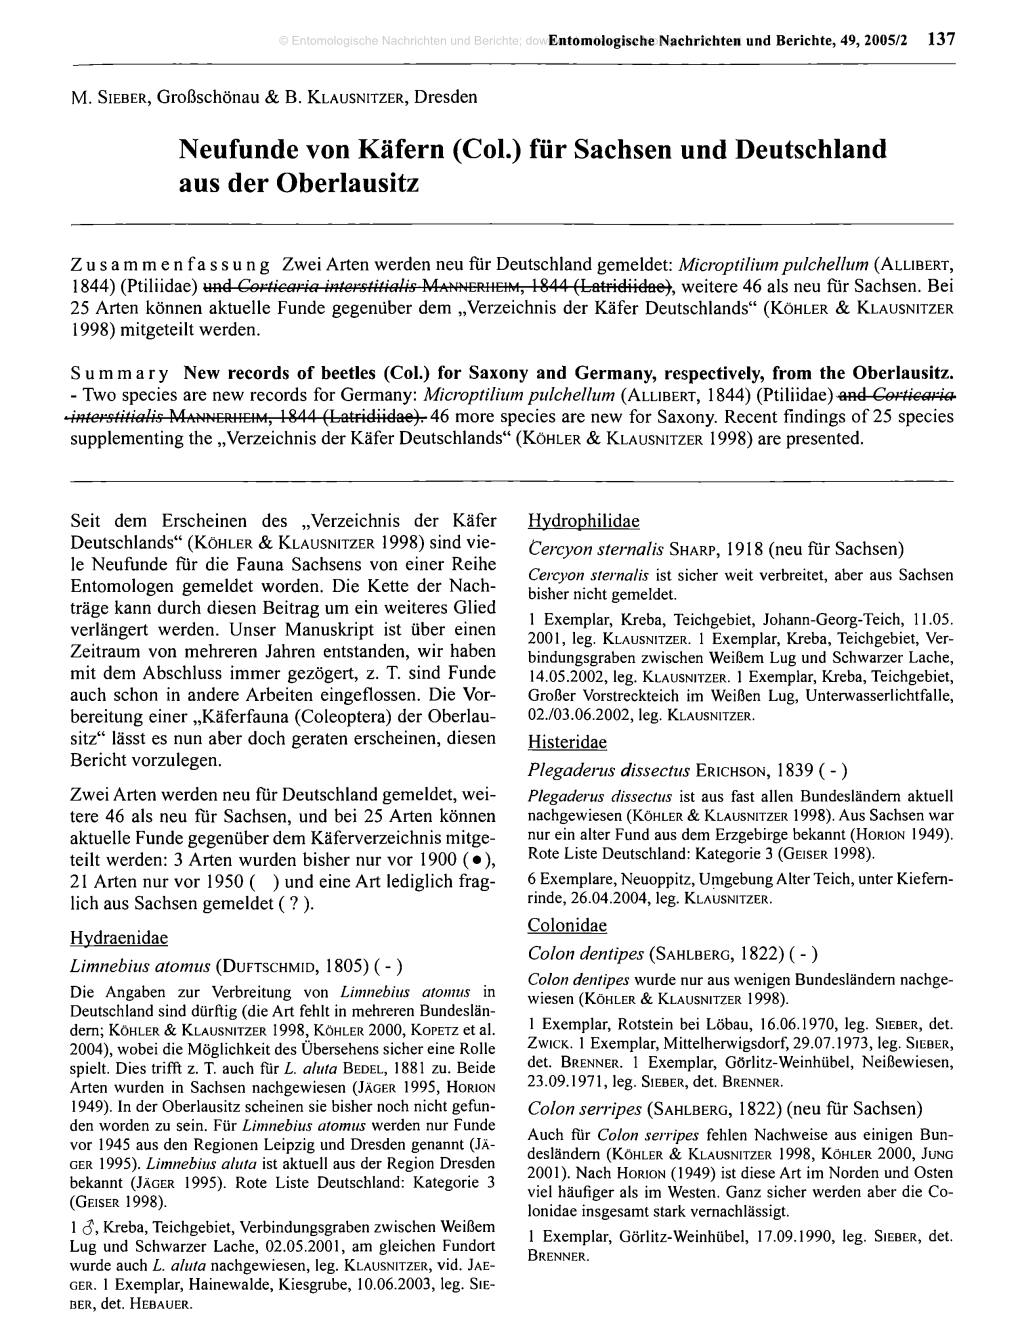 Neufunde Von Käfern (Col.) Für Sachsen Und Deutschland Aus Der Oberlausitz